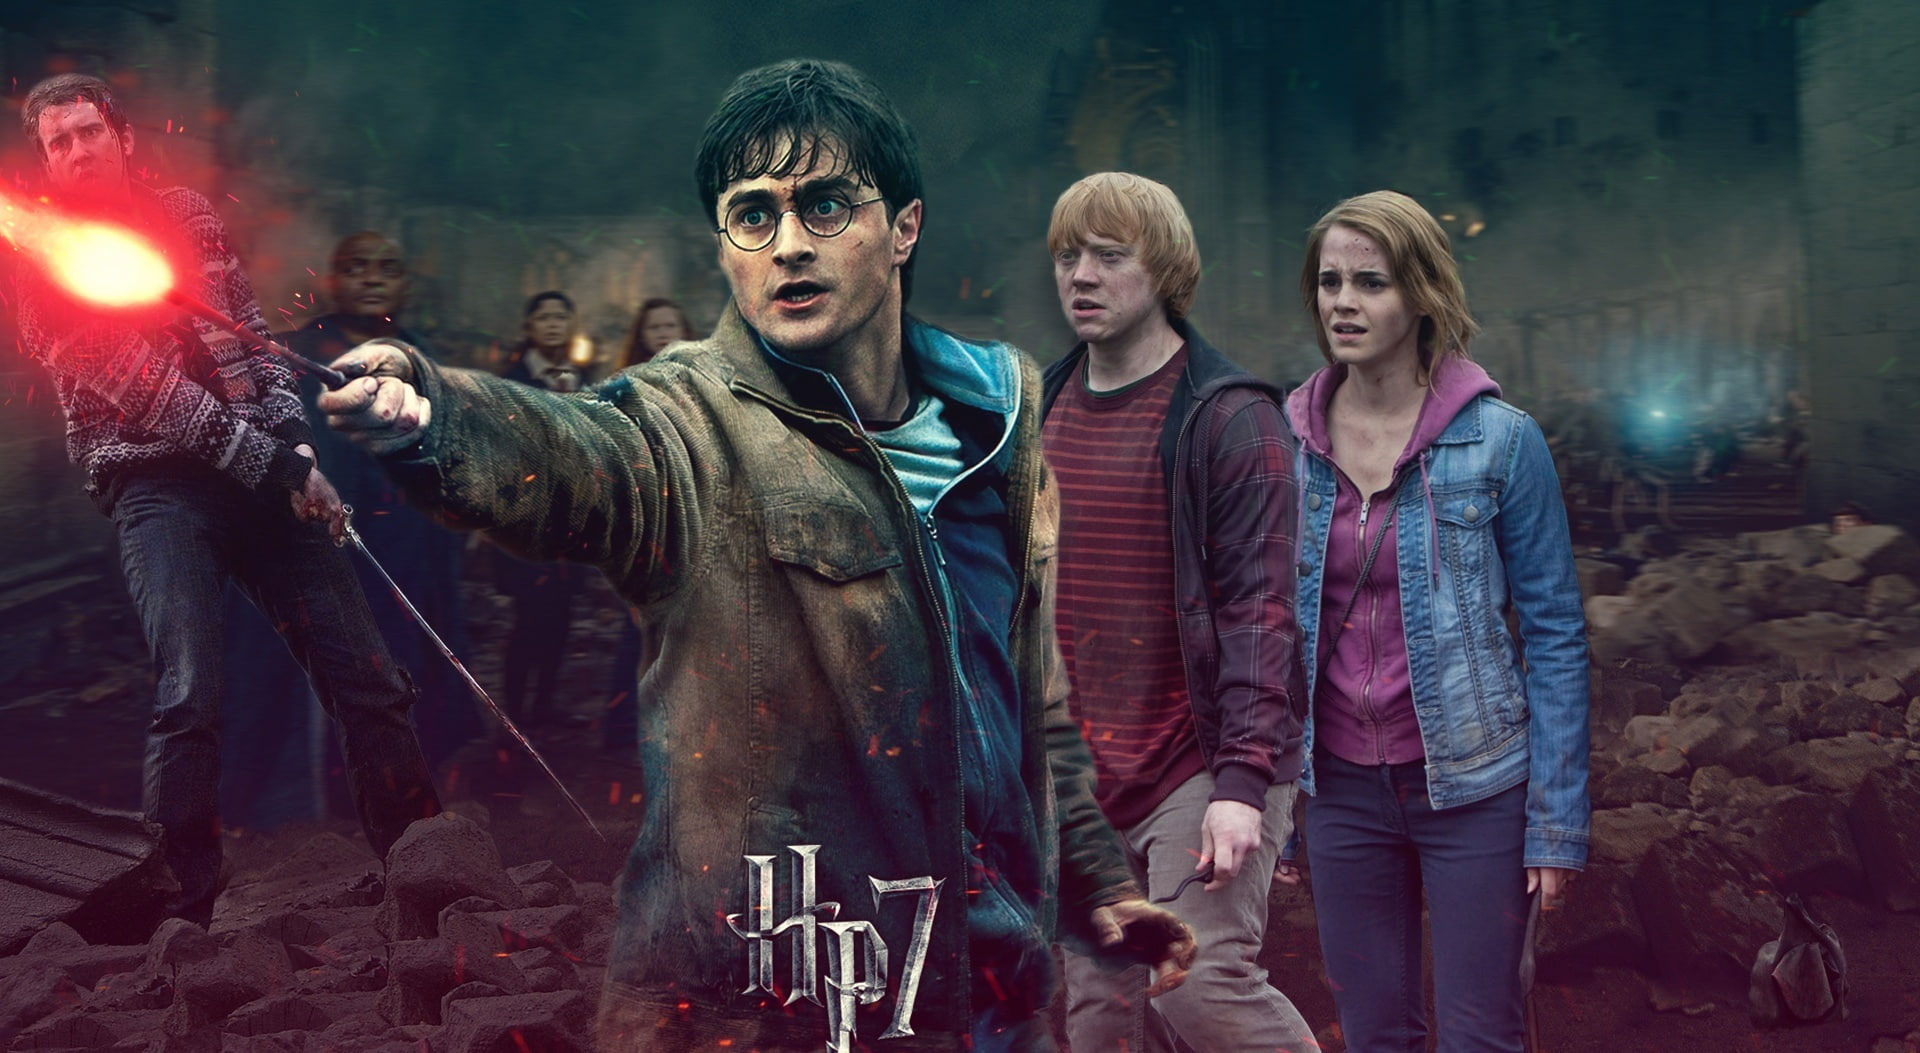 Wallpaper Harry Potter Battle Of Hogwarts Harrys Side